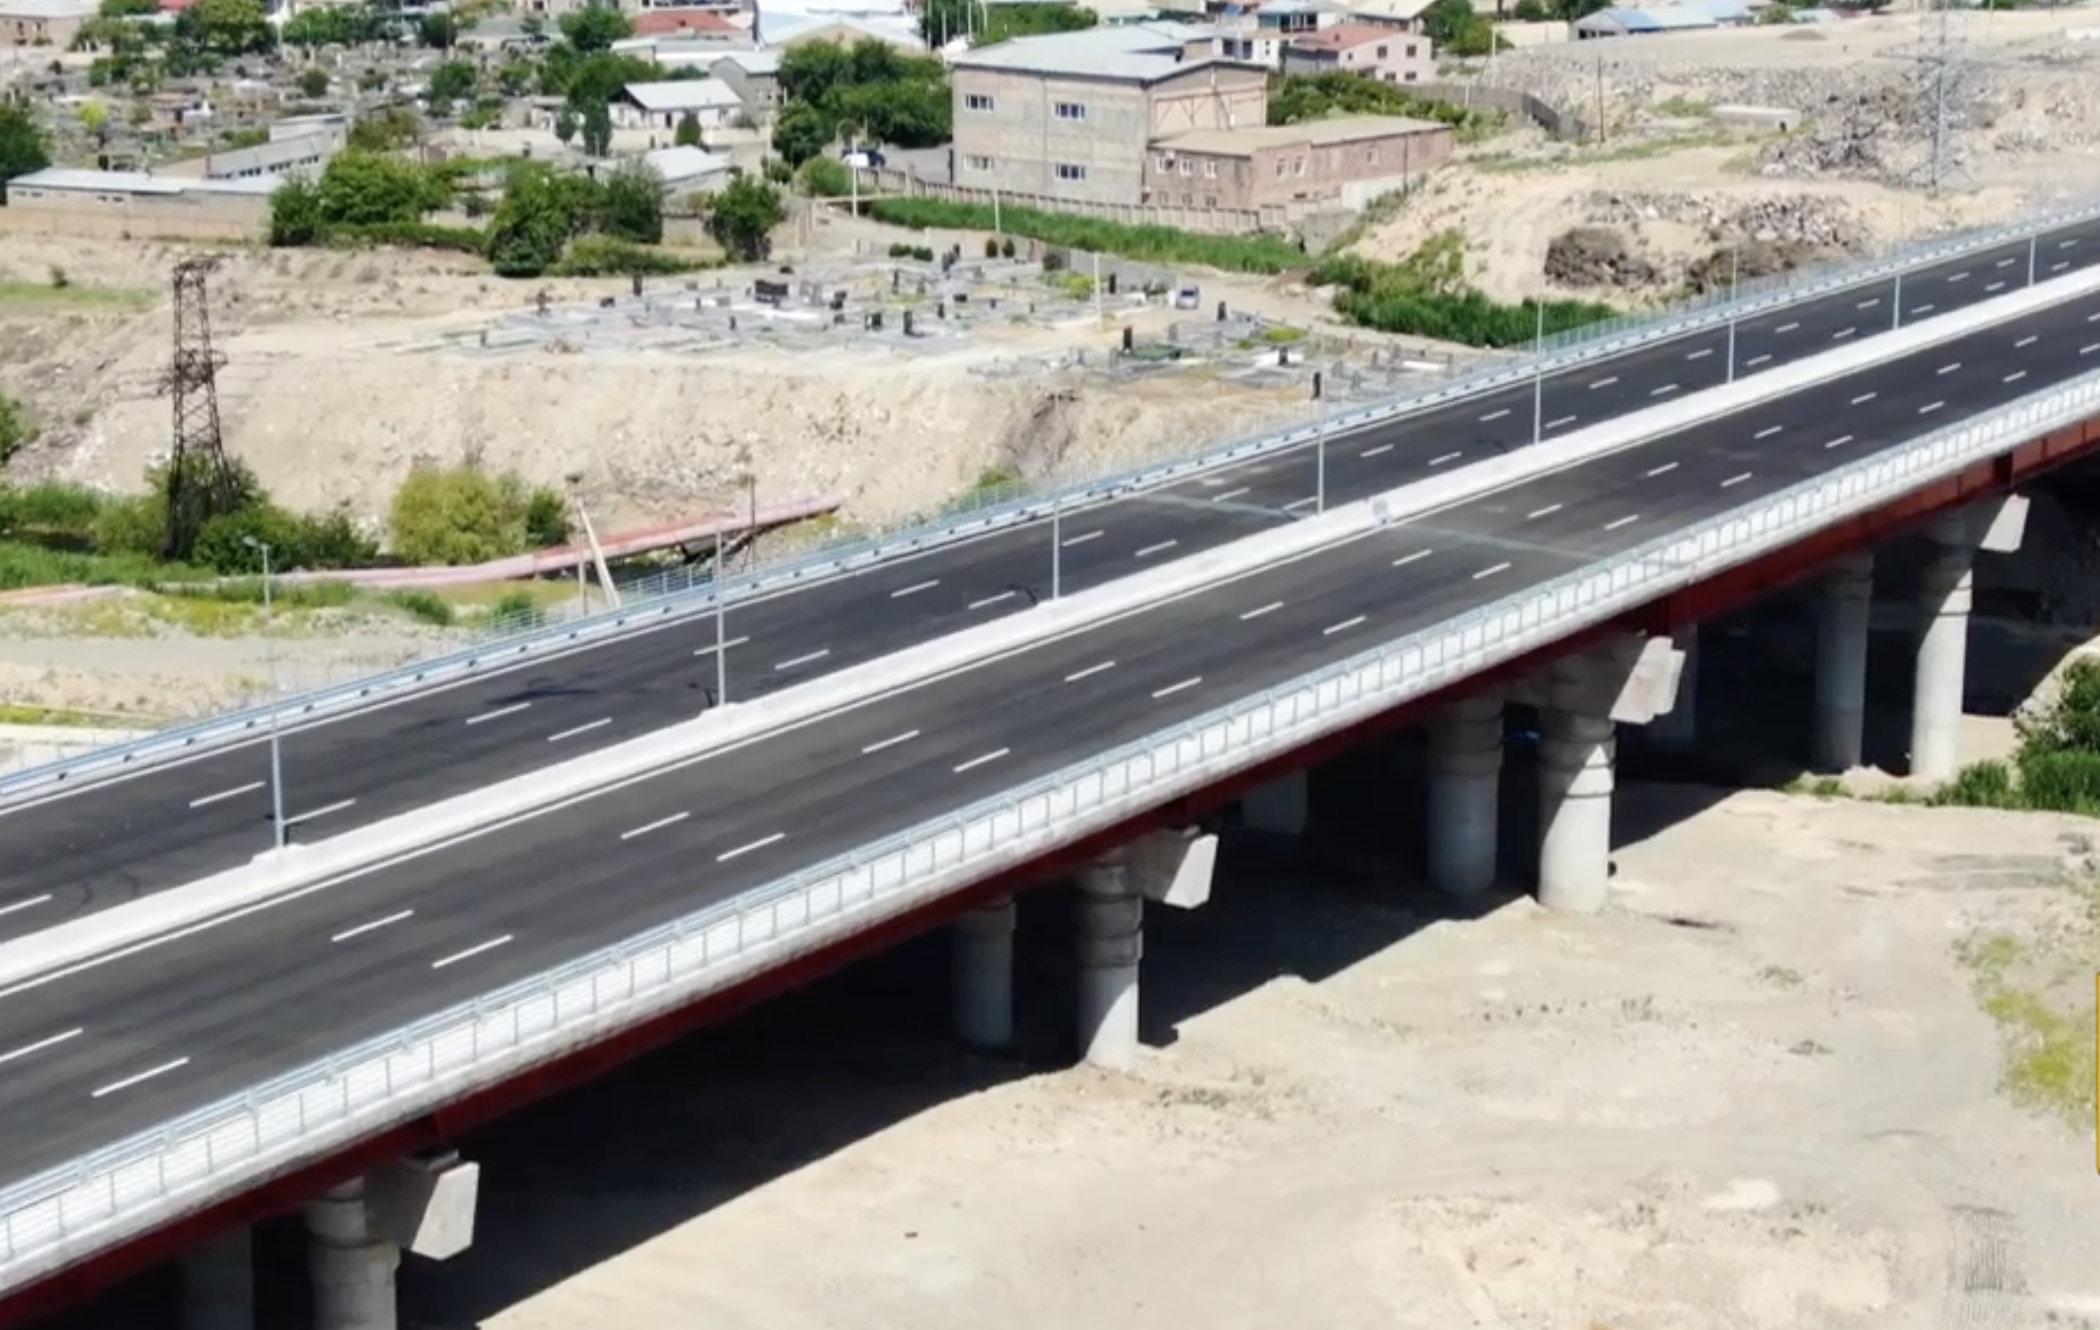  Երևանում 5-րդ խոշոր կամուրջը հանձնվում է շահագործման